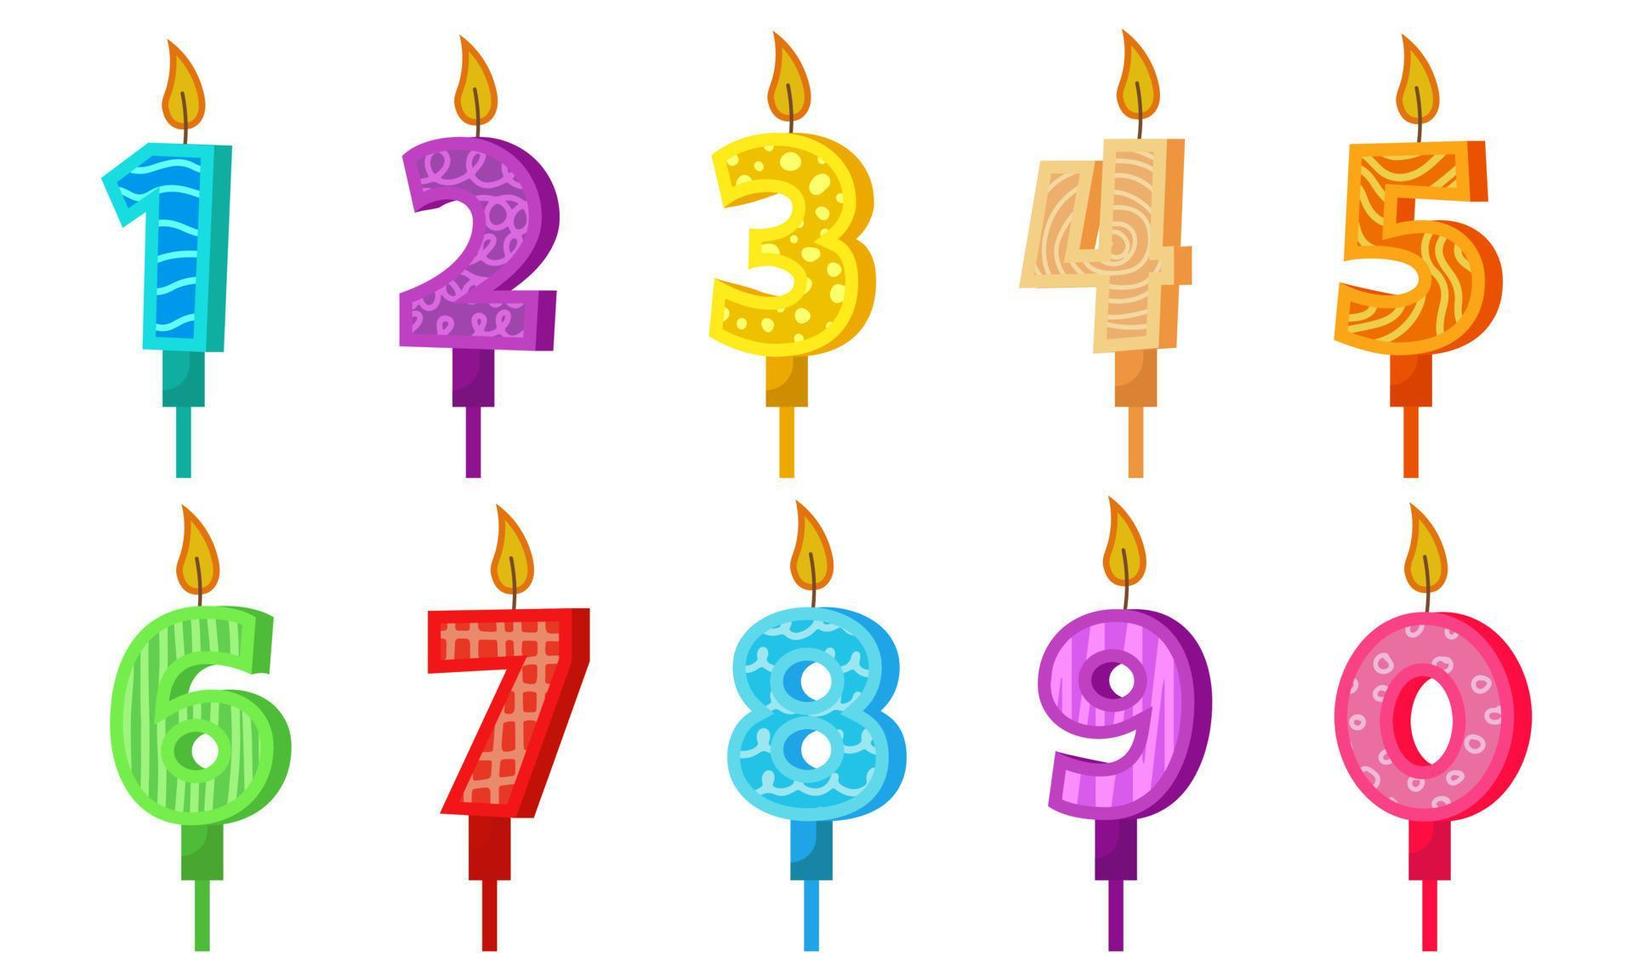 bougies d'anniversaire avec chiffres et feu. définir des icônes colorées pour l'anniversaire ou la fête. chandelle de vacances avec de la cire et une bougie de dessin animé drôle pour le gâteau. objet de collection zéro à neuf vecteur